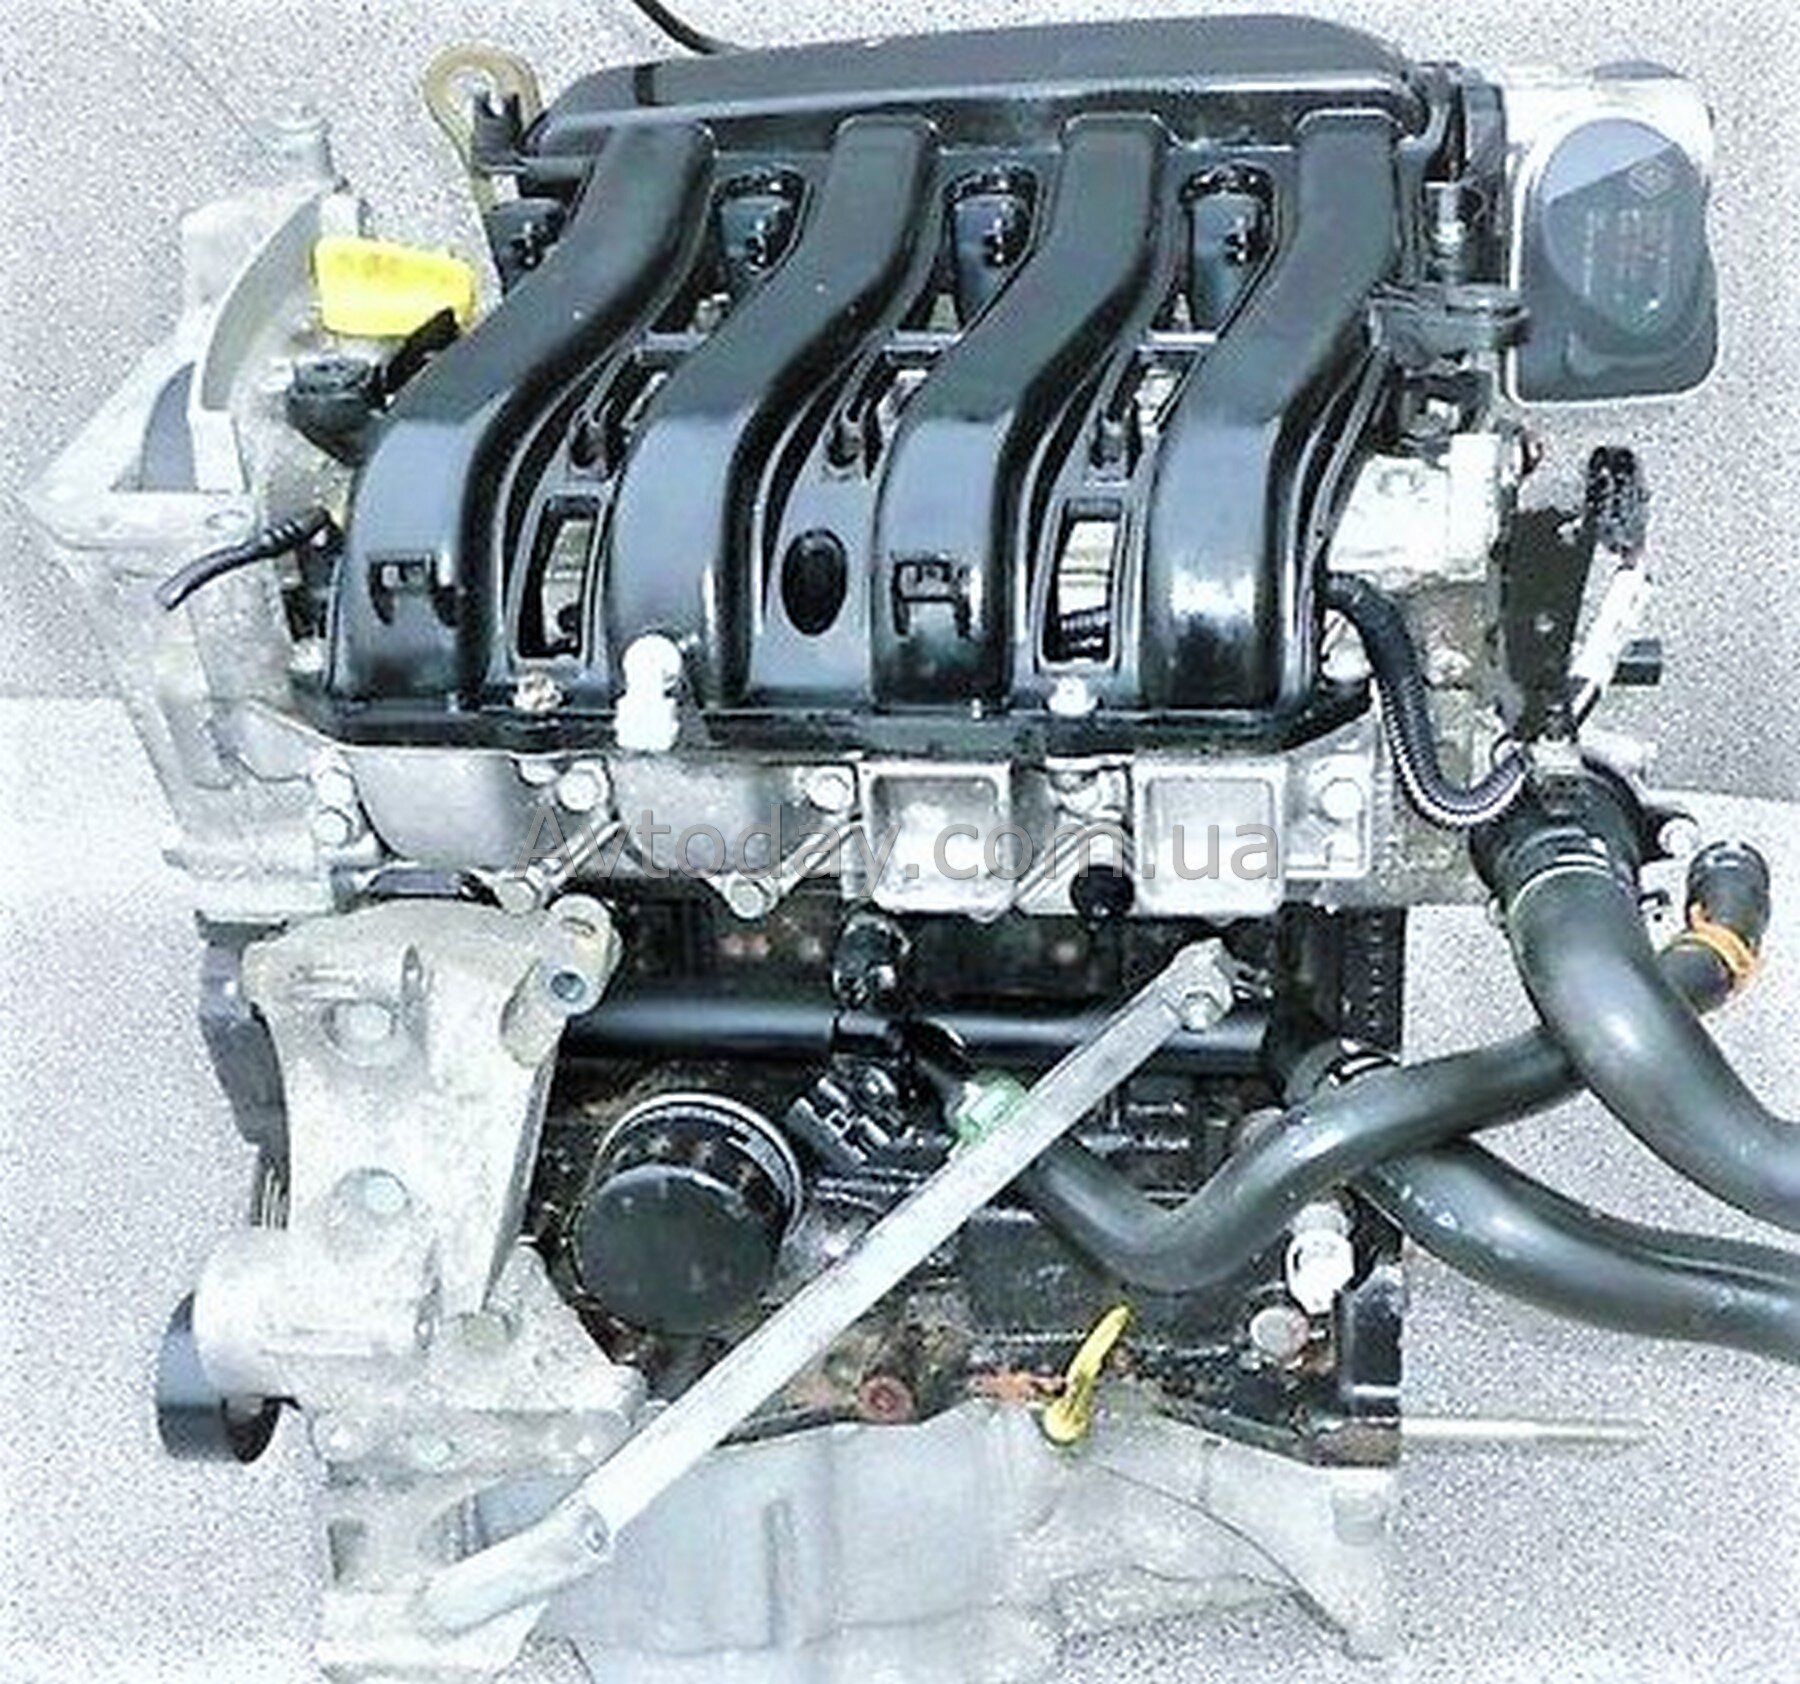 Двигатель к4м 1.6 16 купить. Renault k4m 1.6 л 16 клапанов. Двигатель Рено Меган 1.6 16 клапанов. Двигатель Рено 1 6 16кл. Двигатель Renault 1.6 (k4m.